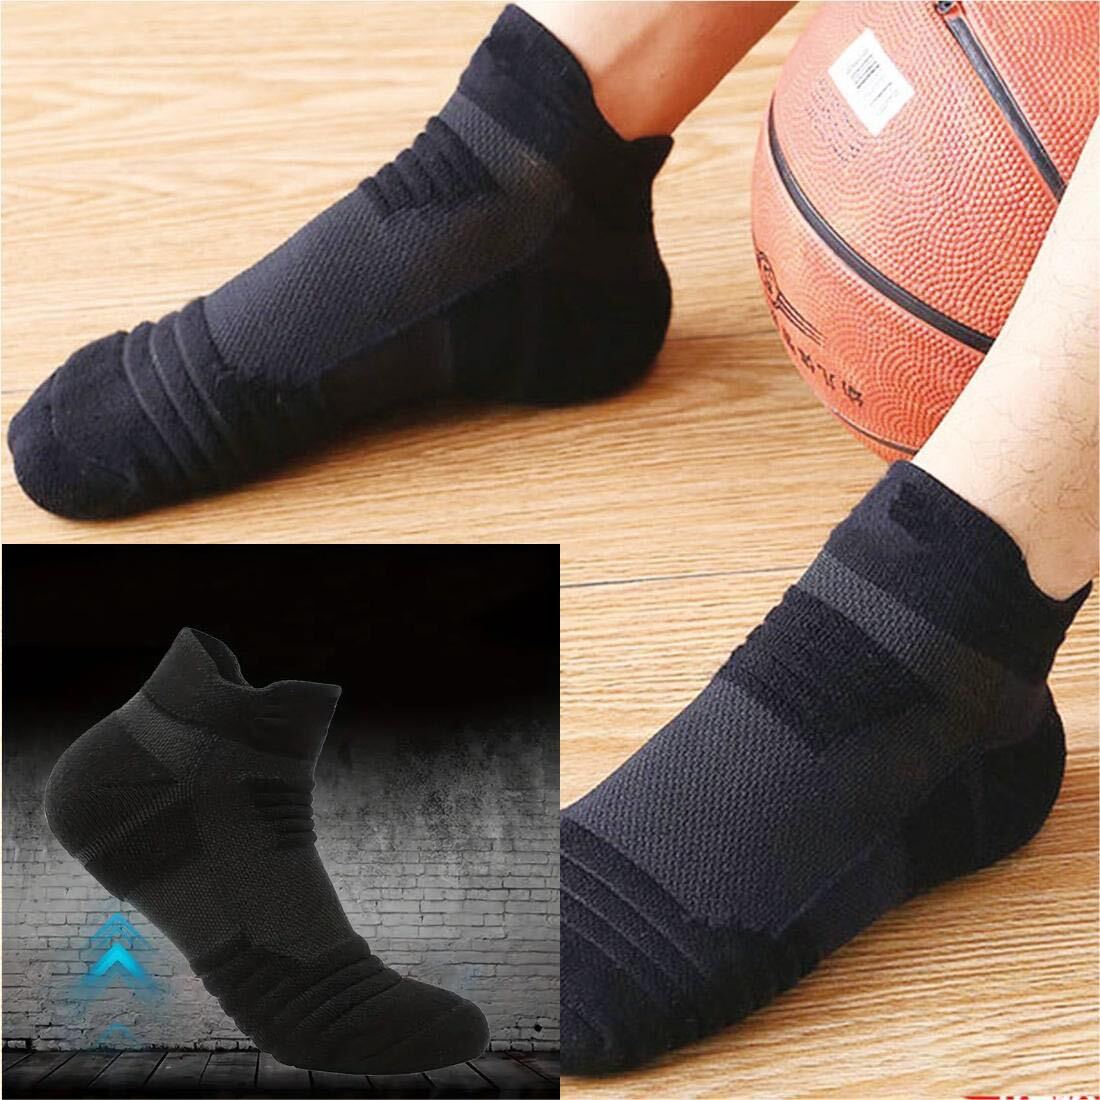  sport socks men's socks socks thick short socks black gray white high quality cotton 